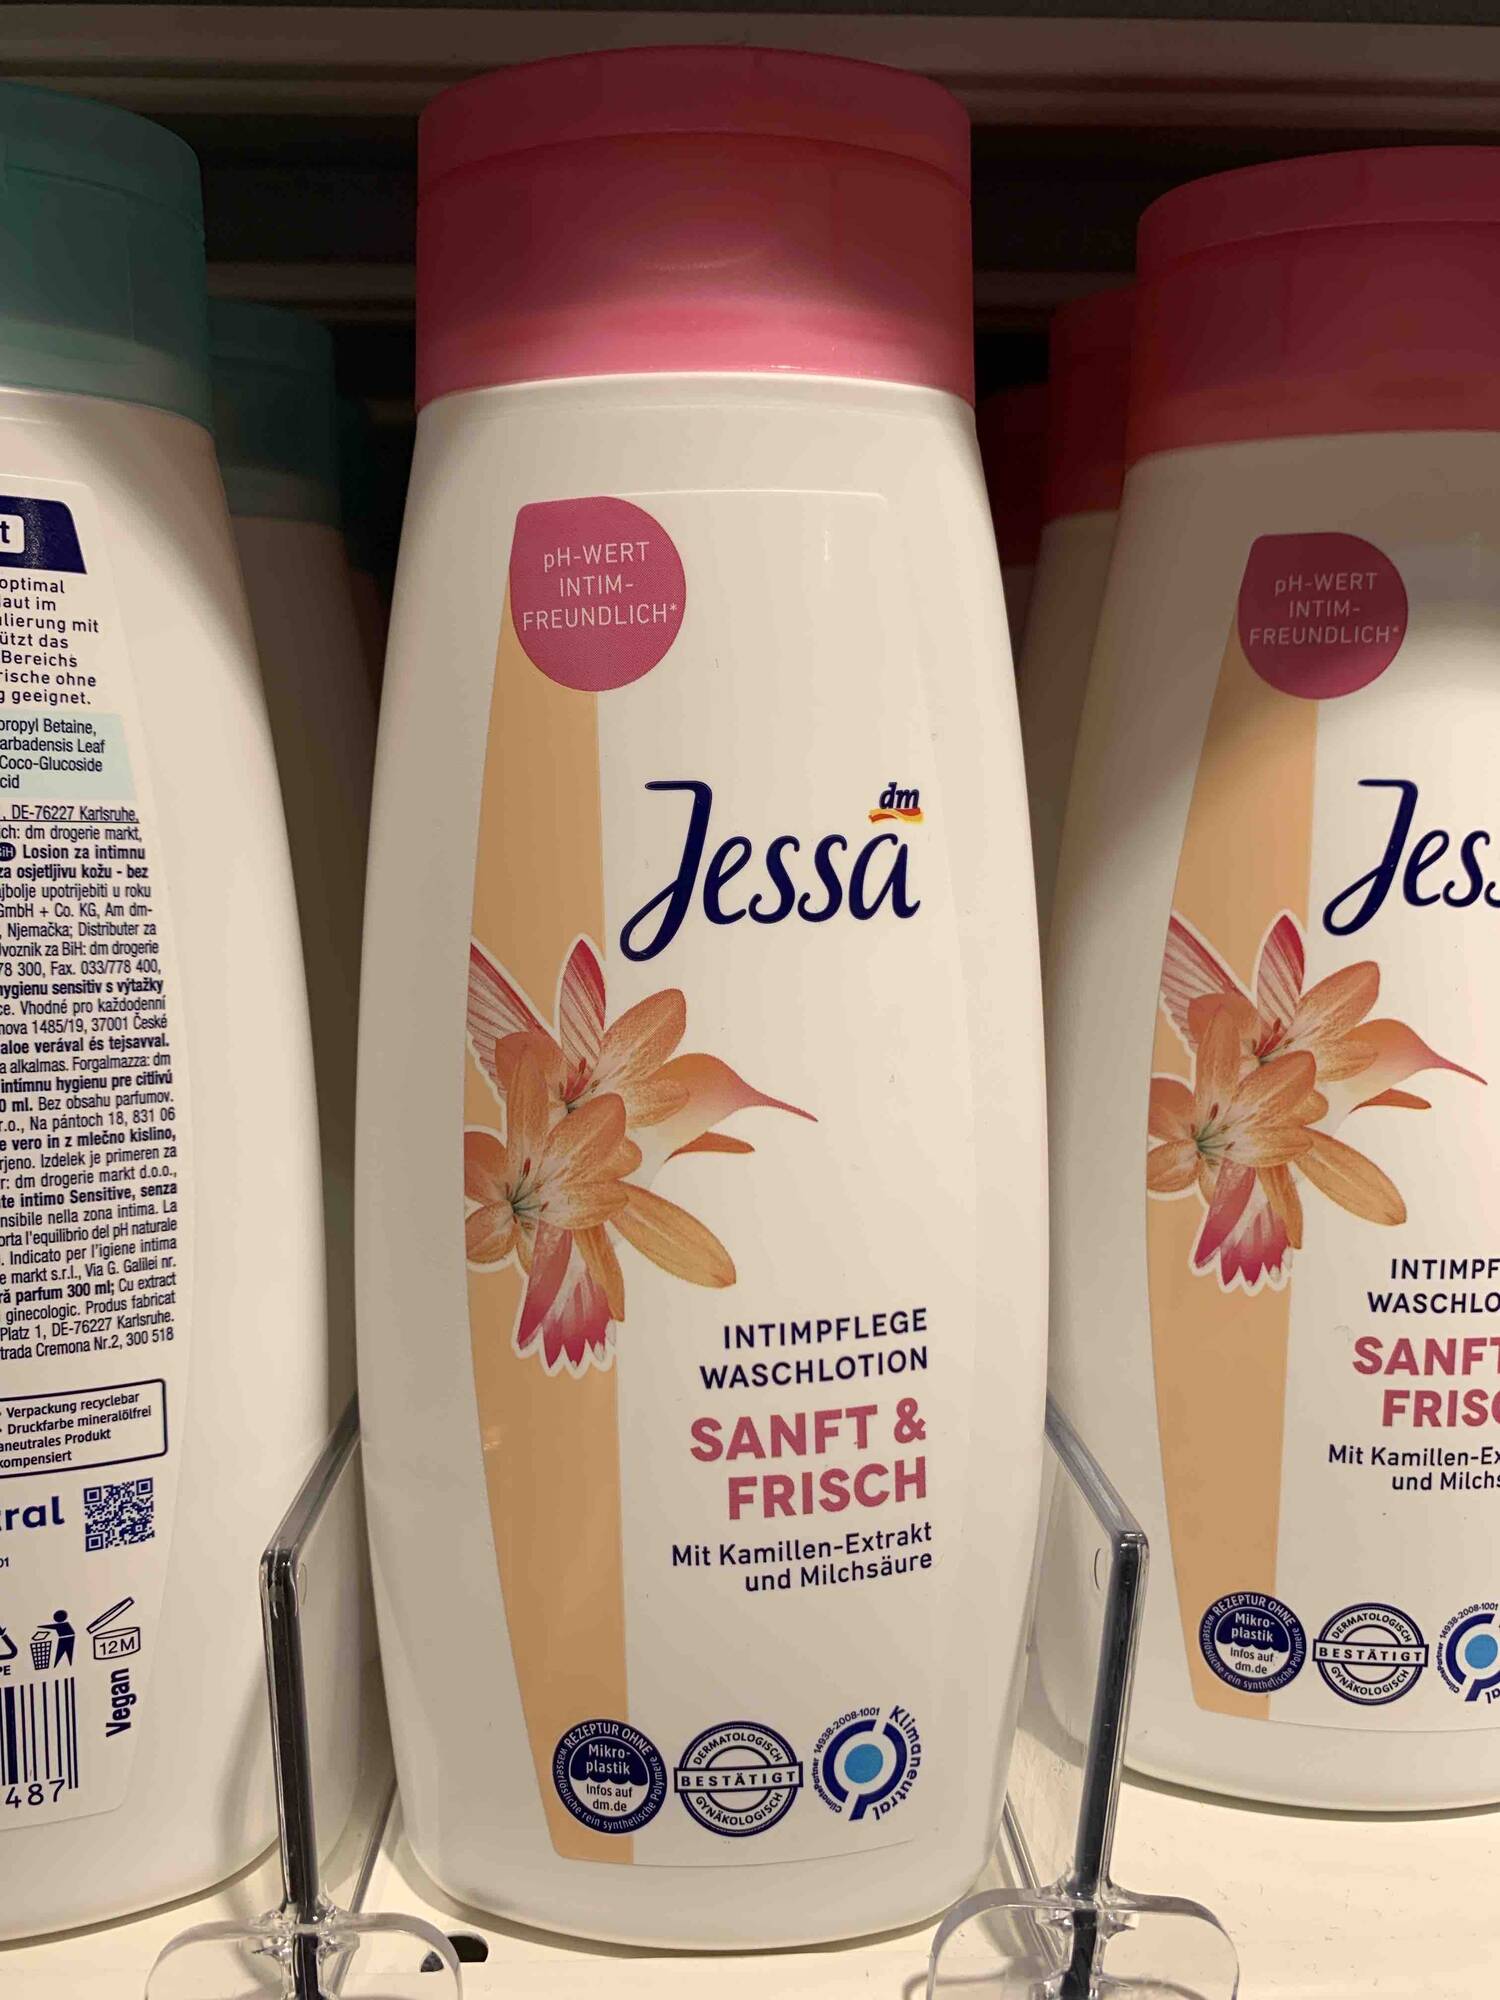 JESSA - Intimpflege waschlotion sanft & frisch